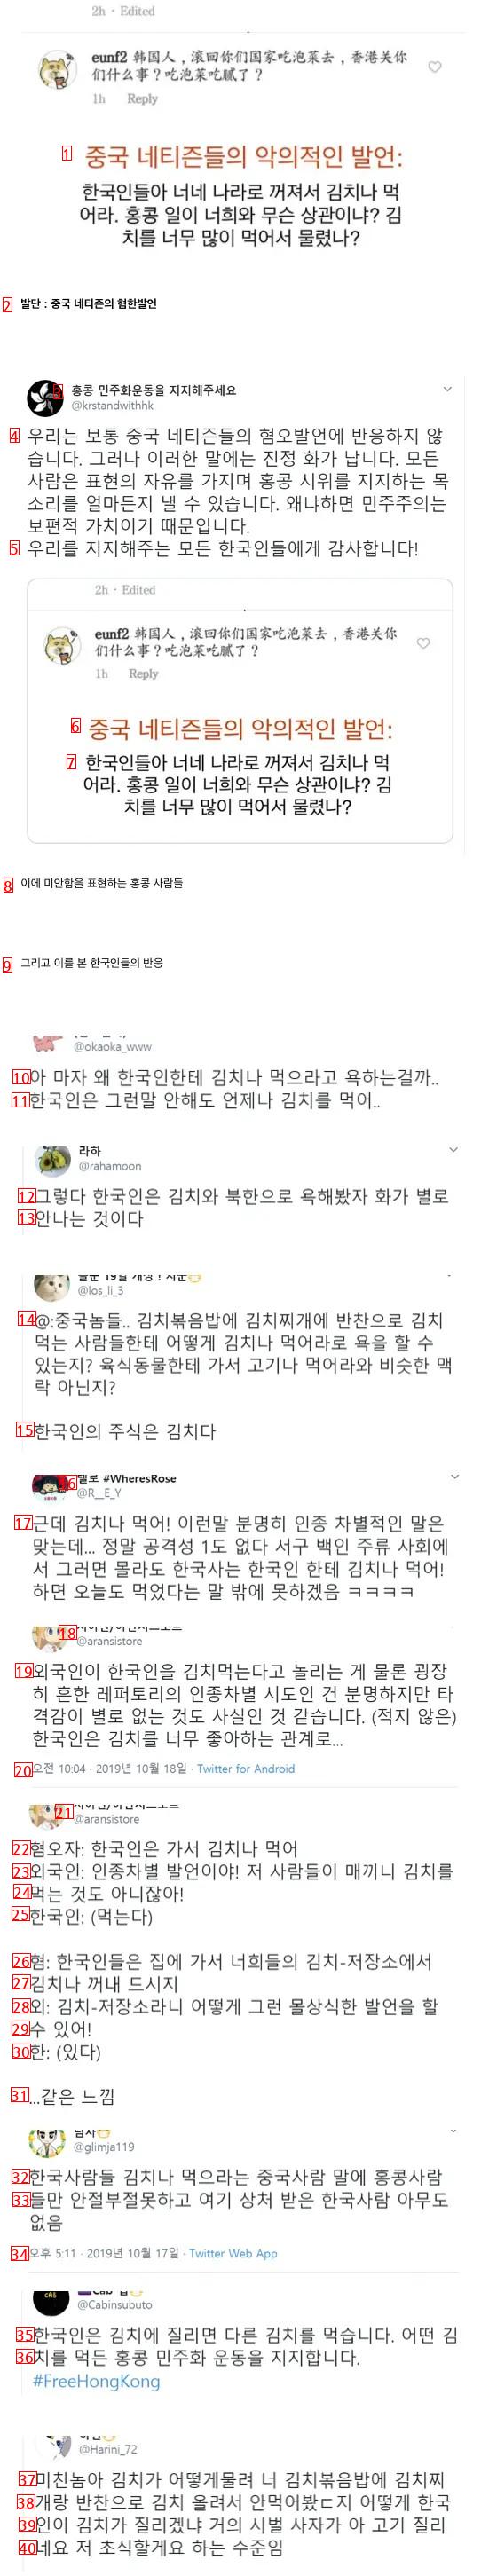 한국인에게 전혀 딜이 박히지 않는 인종차별적 발언.jpg